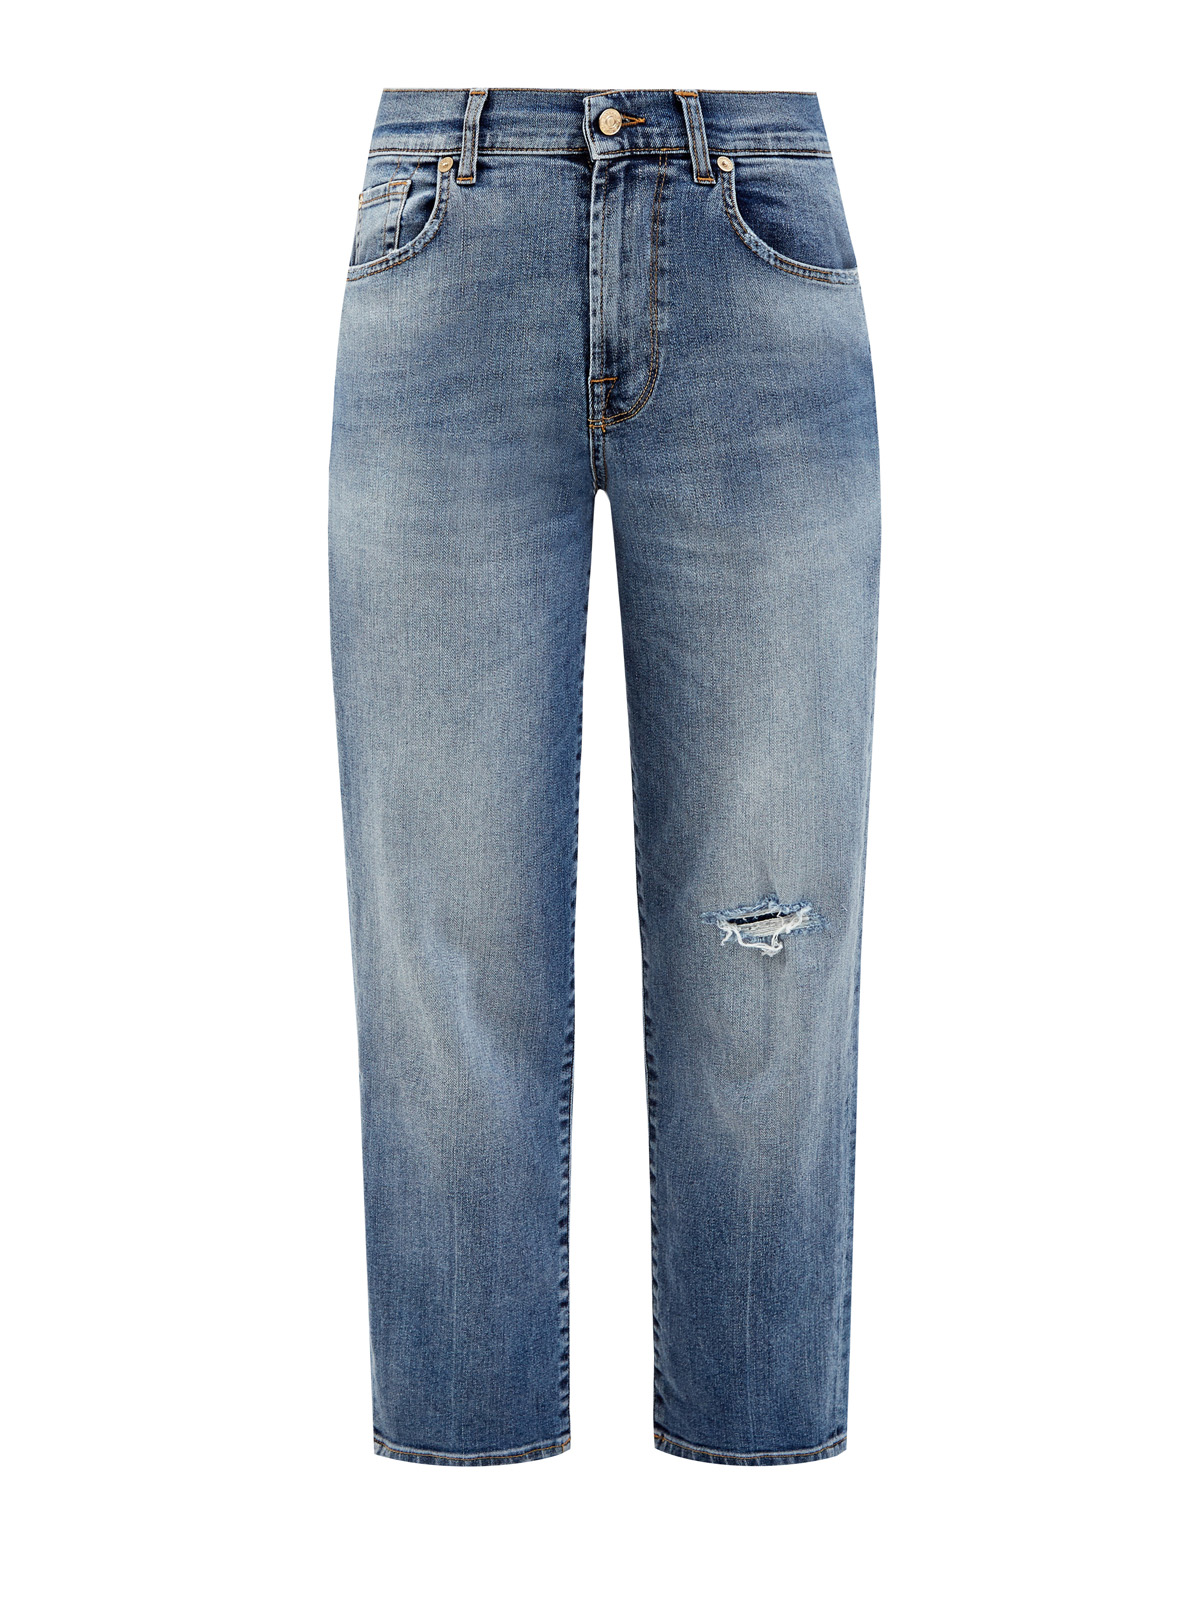 Укороченные джинсы Modern Straight из выбеленного денима